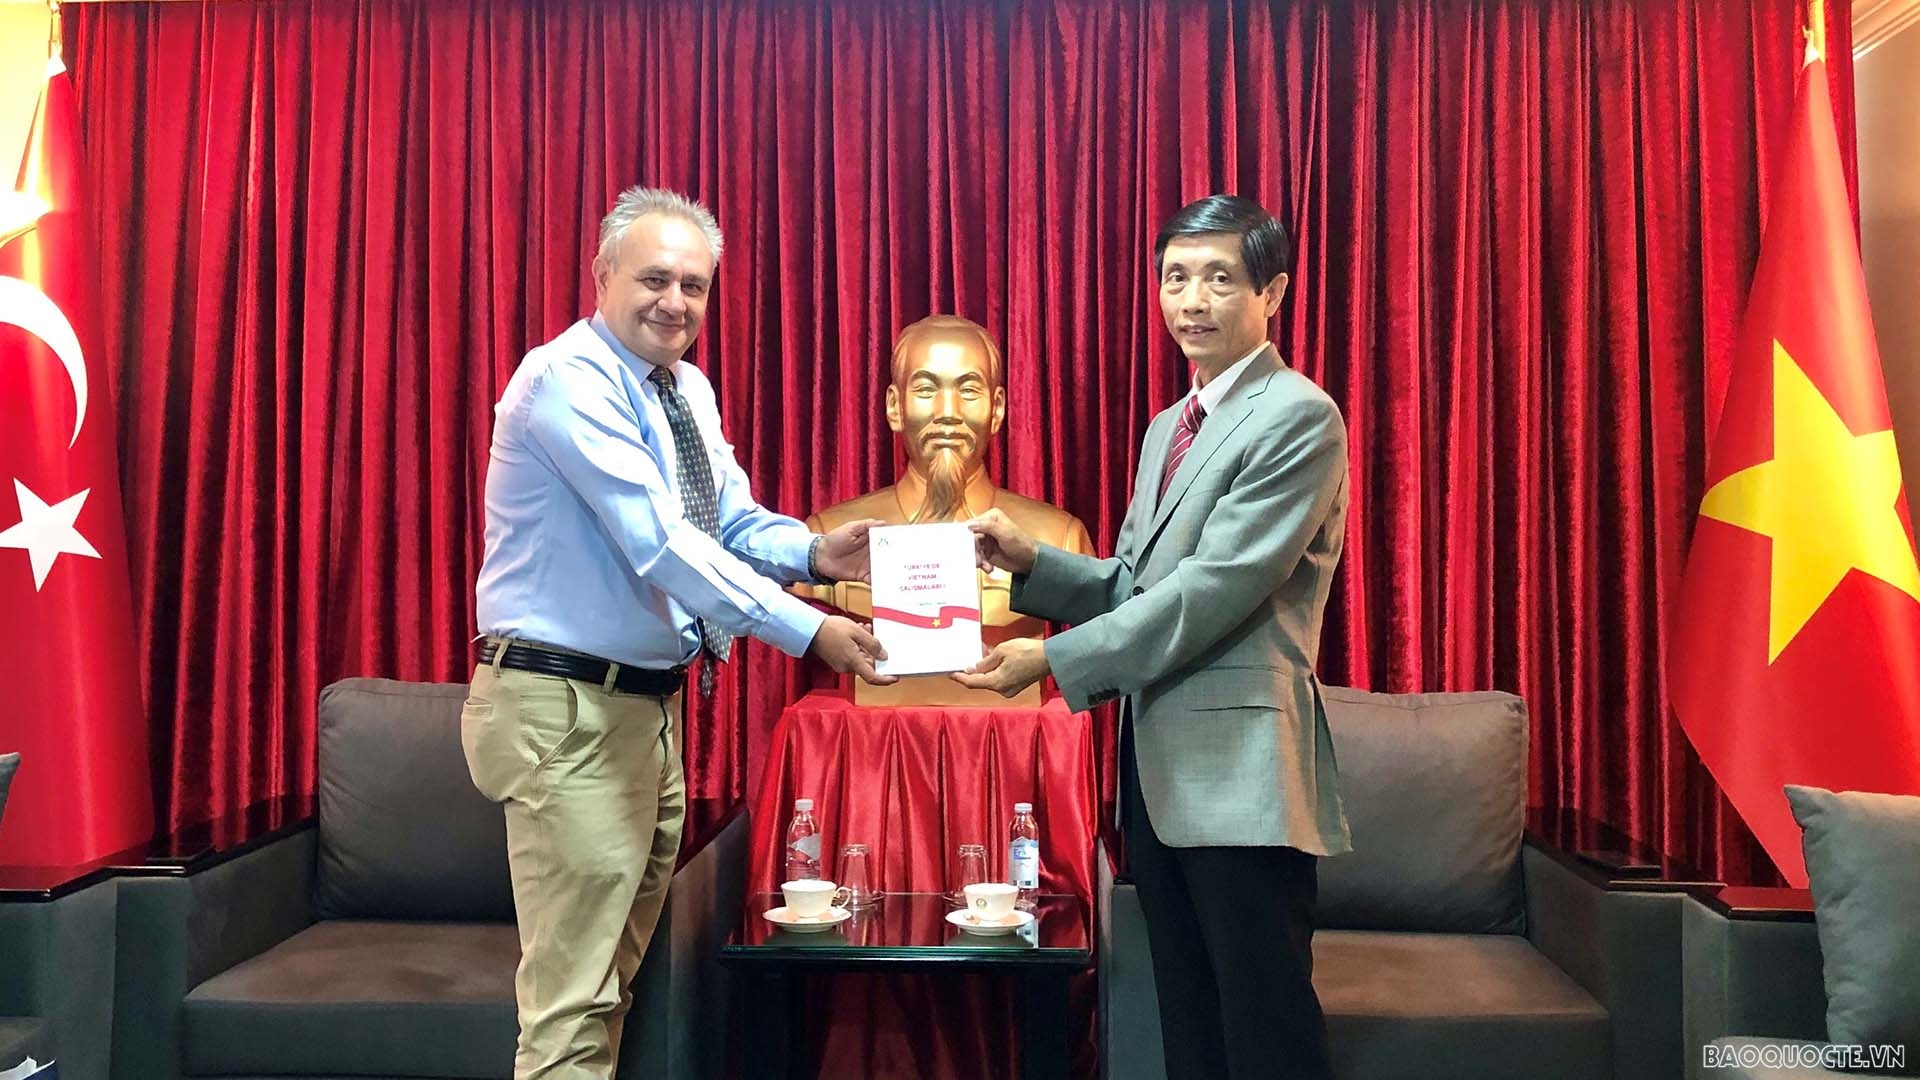 Giáo sư, Tiến sĩ A. Merthan Dundar, Giám đốc APAM trao cuốn sách “Nghiên cứu về Việt Nam tại Thổ Nhĩ Kỳ” cho Đại sứ Trần Quang Tuyến.